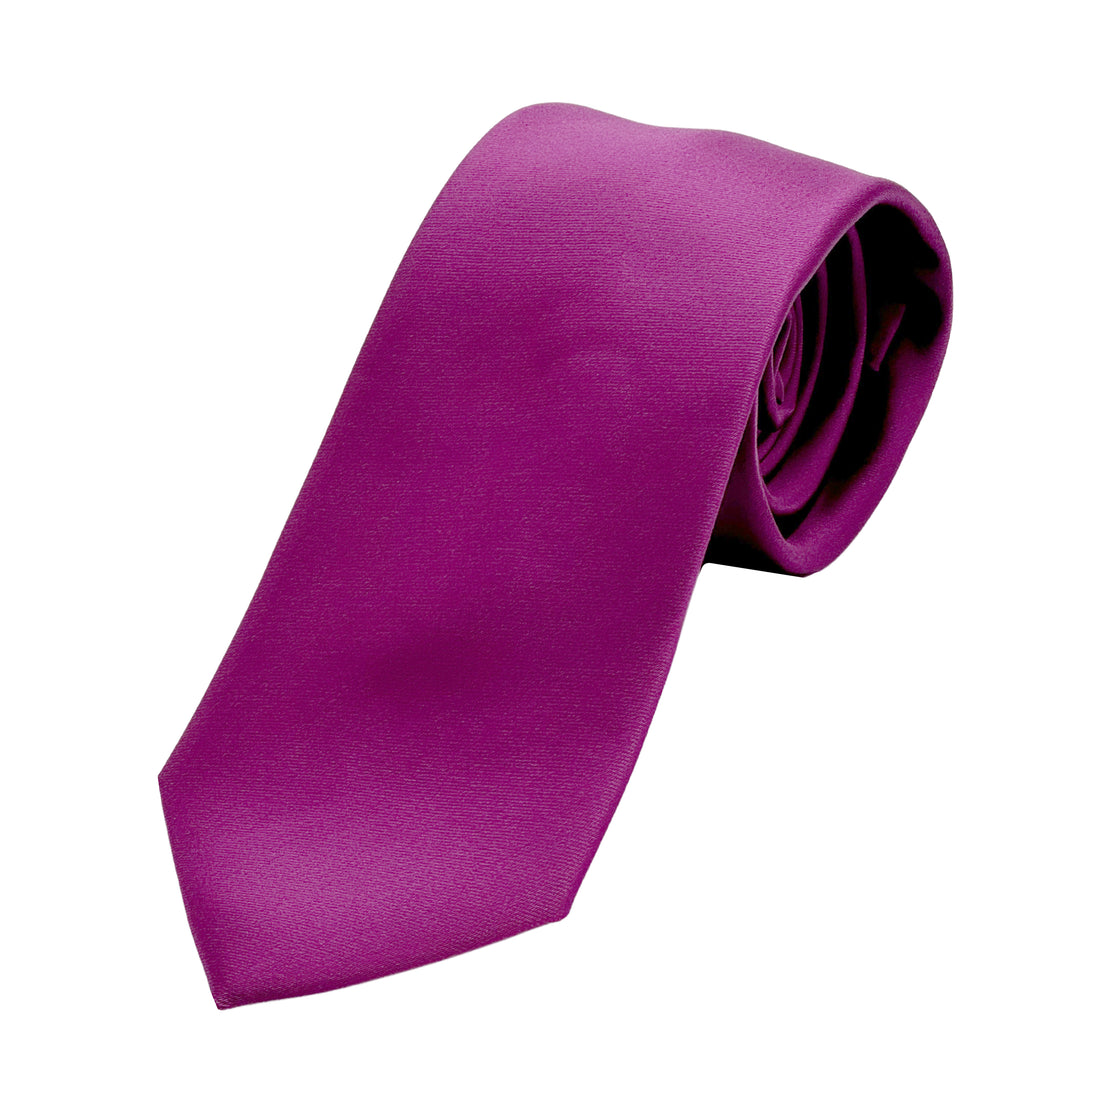 JASATINT James Adelin Luxury Satin Weave Neck Tie